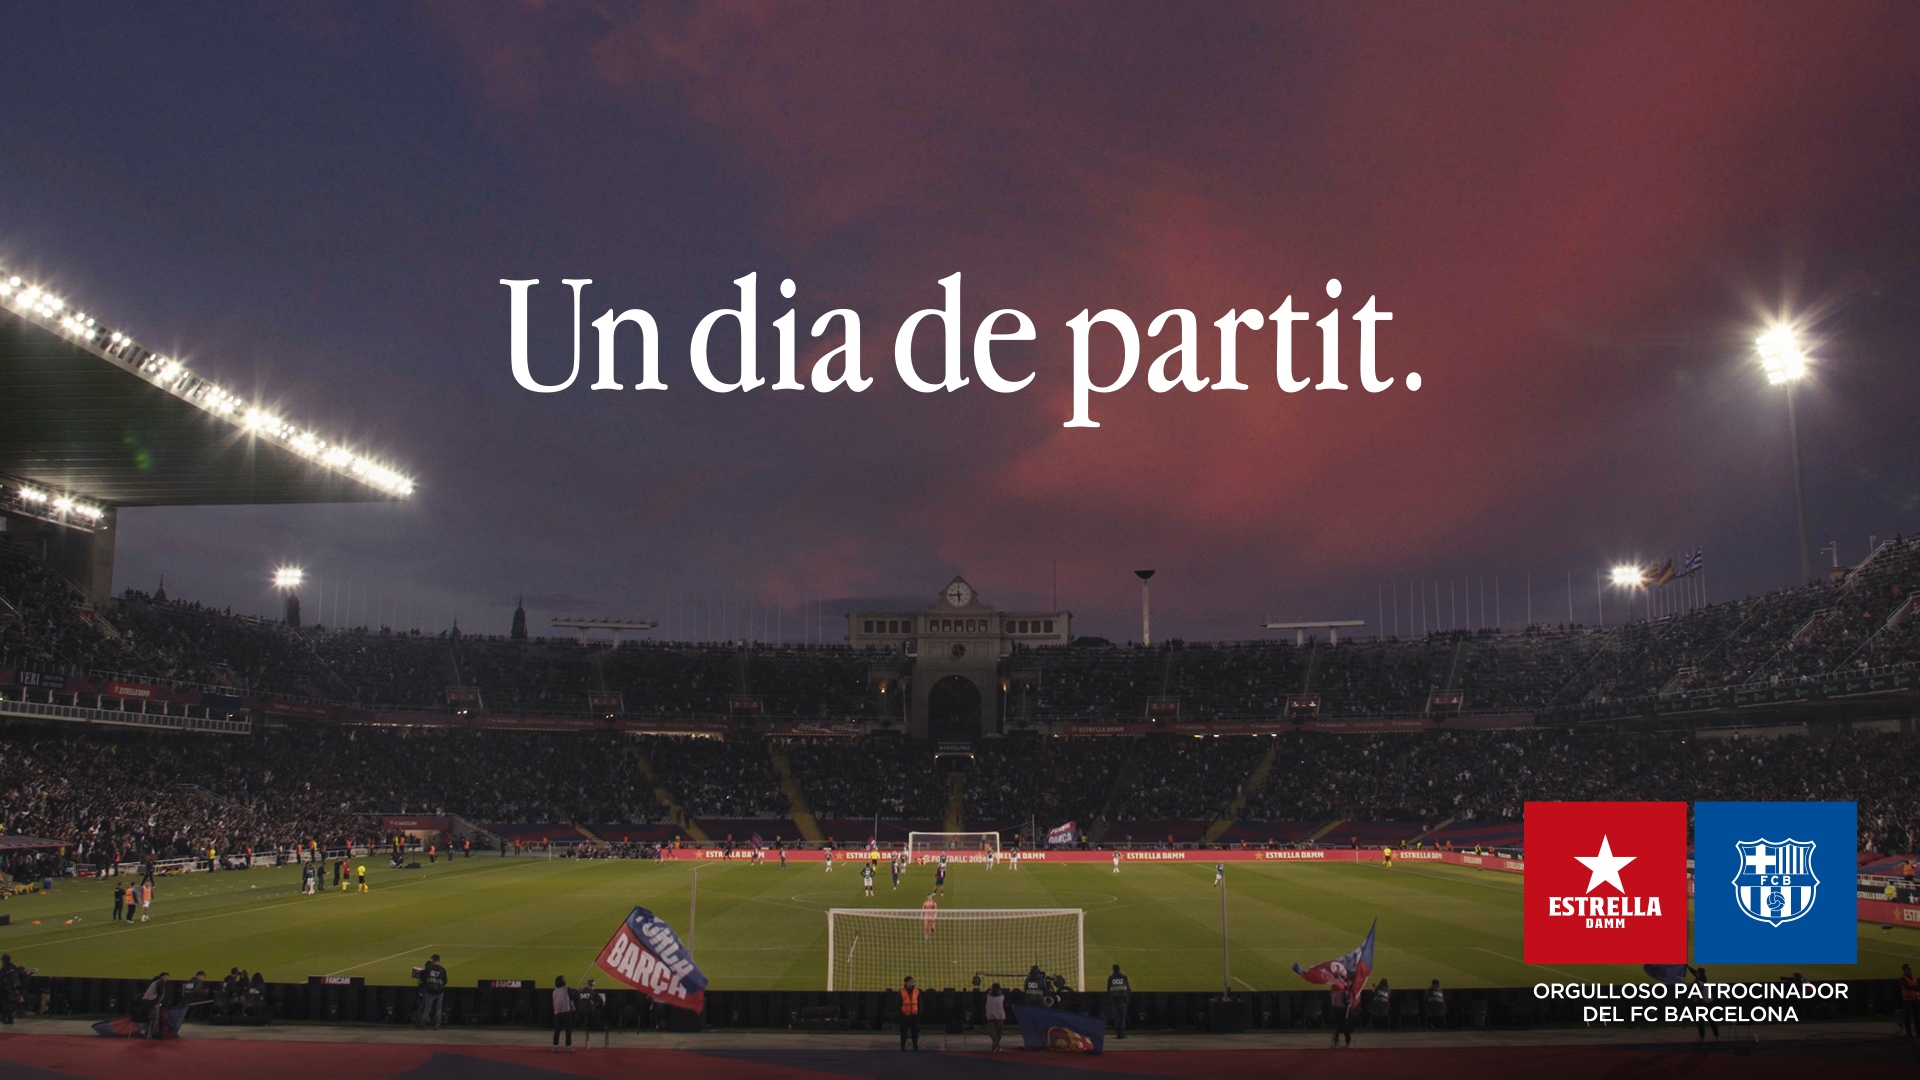 El Barça sigue renovando patrocinadores: Estrella Damm, blaugrana cinco años más